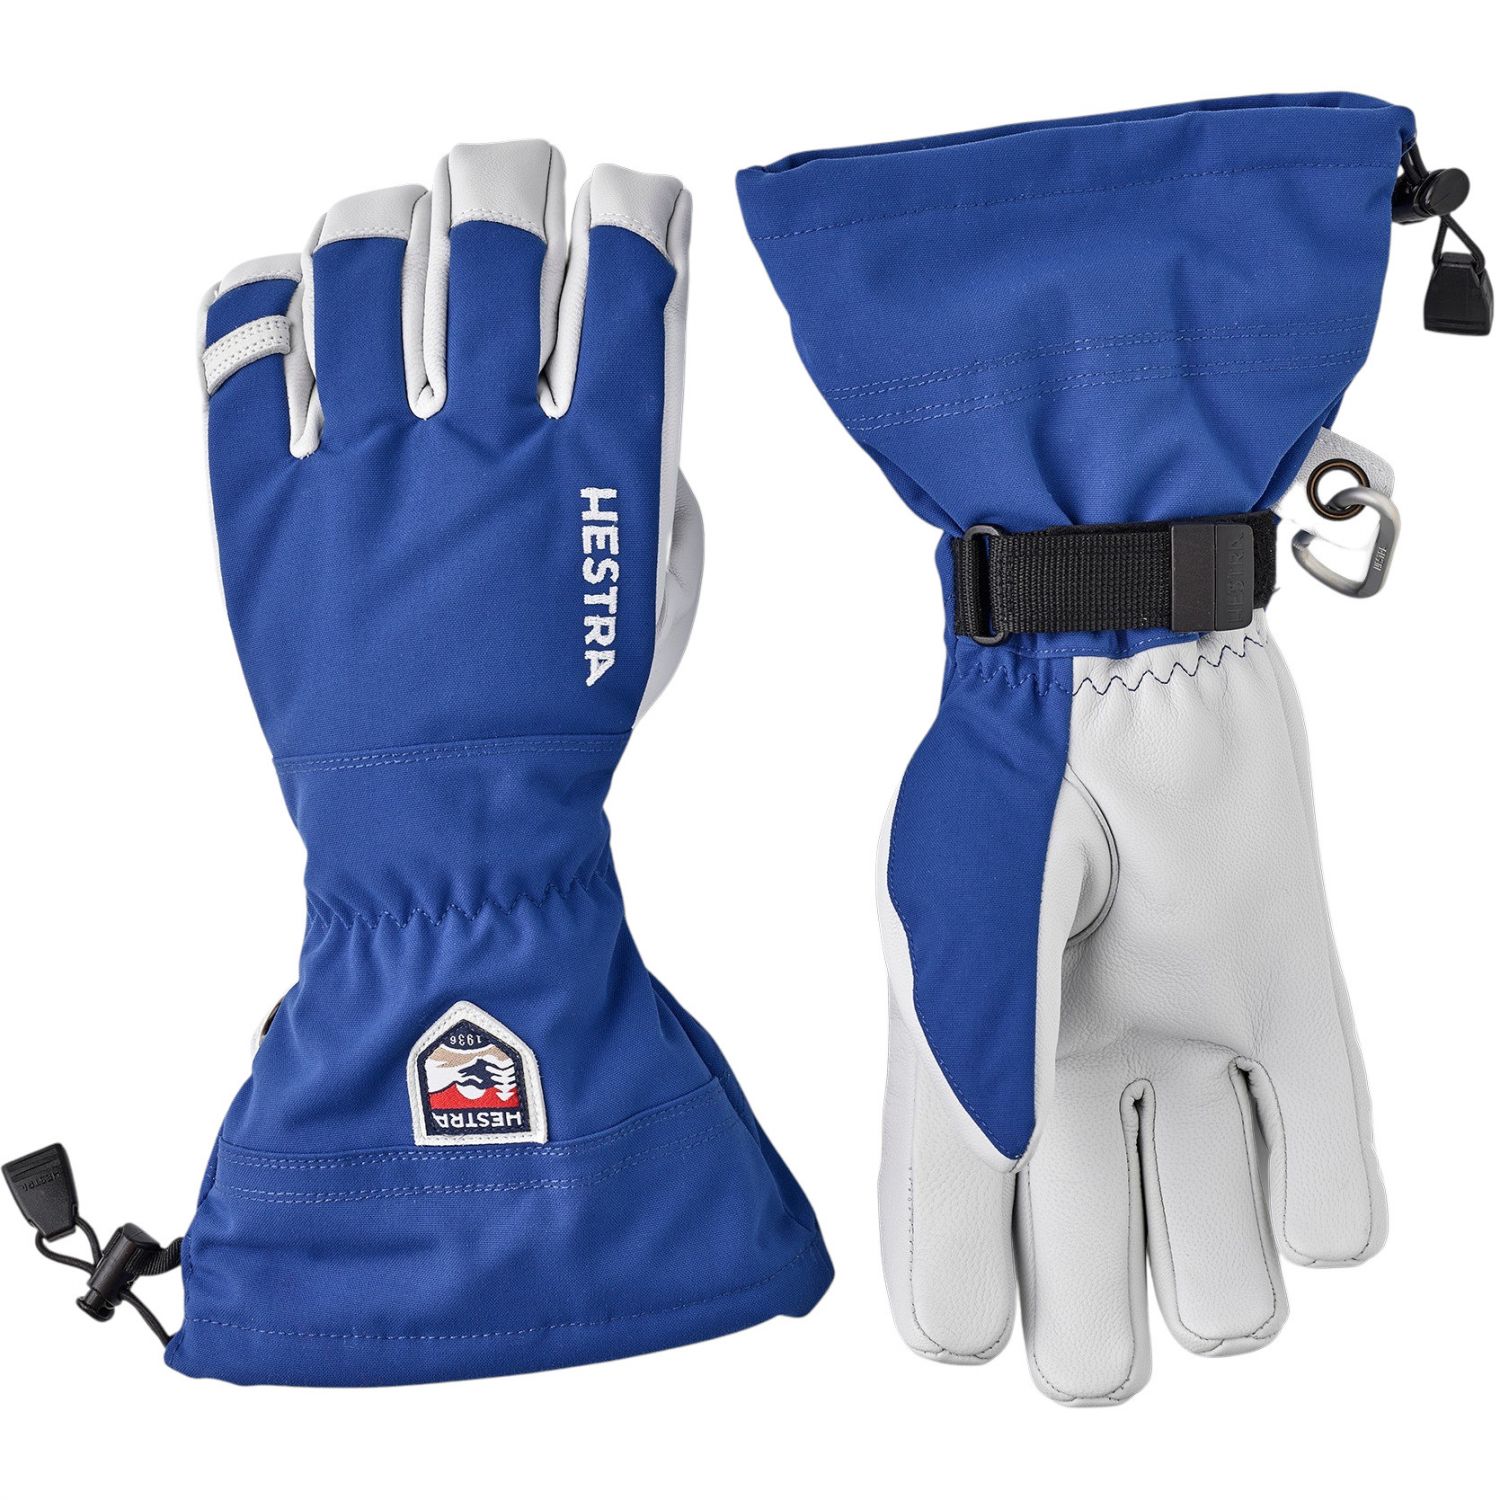 Brug Hestra Army Leather Heli Ski, skihandsker, blå til en forbedret oplevelse